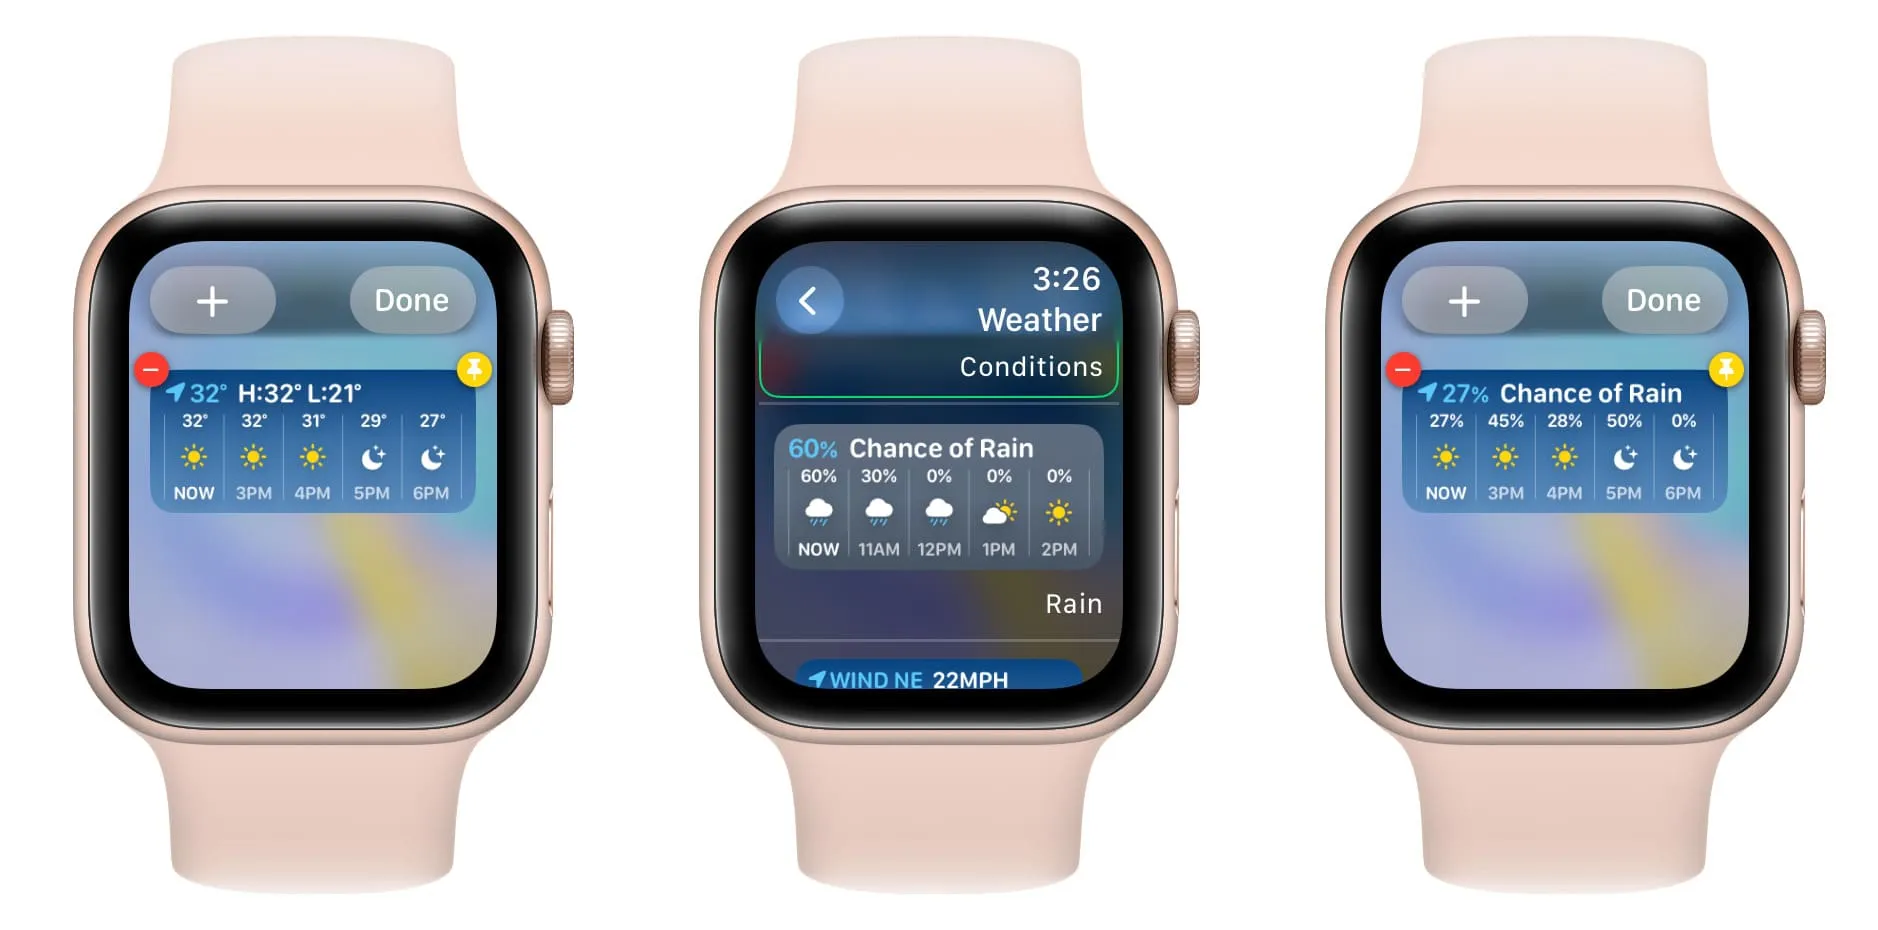 Виберіть інший віджет для існуючого віджета програми на Apple Watch